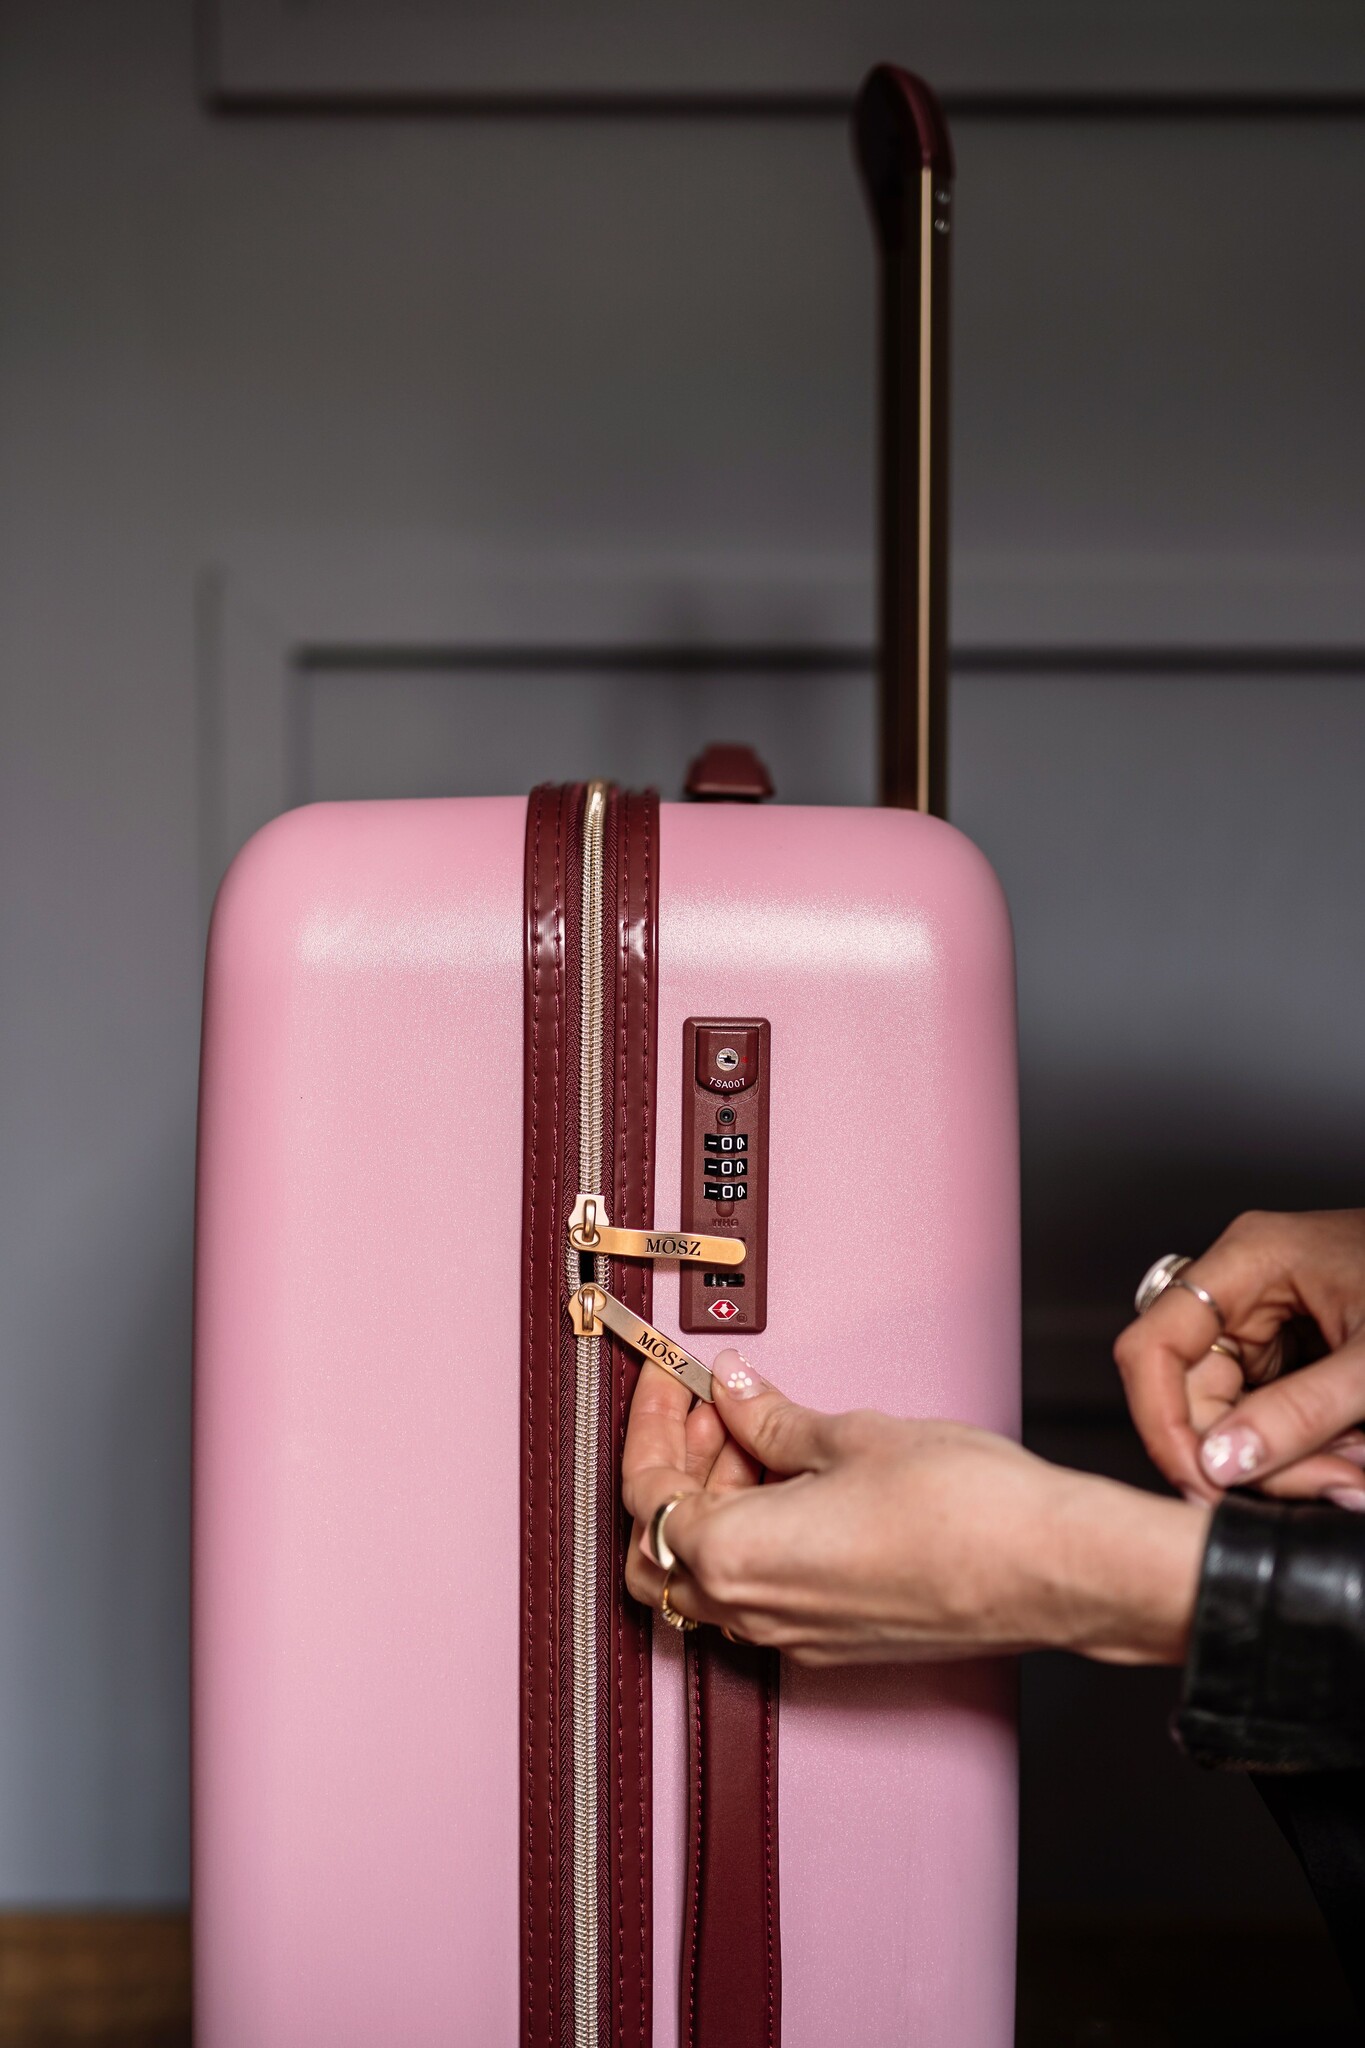 Mosz Mosz Lauren - handbagage dameskoffer - 55cm Blush Pink